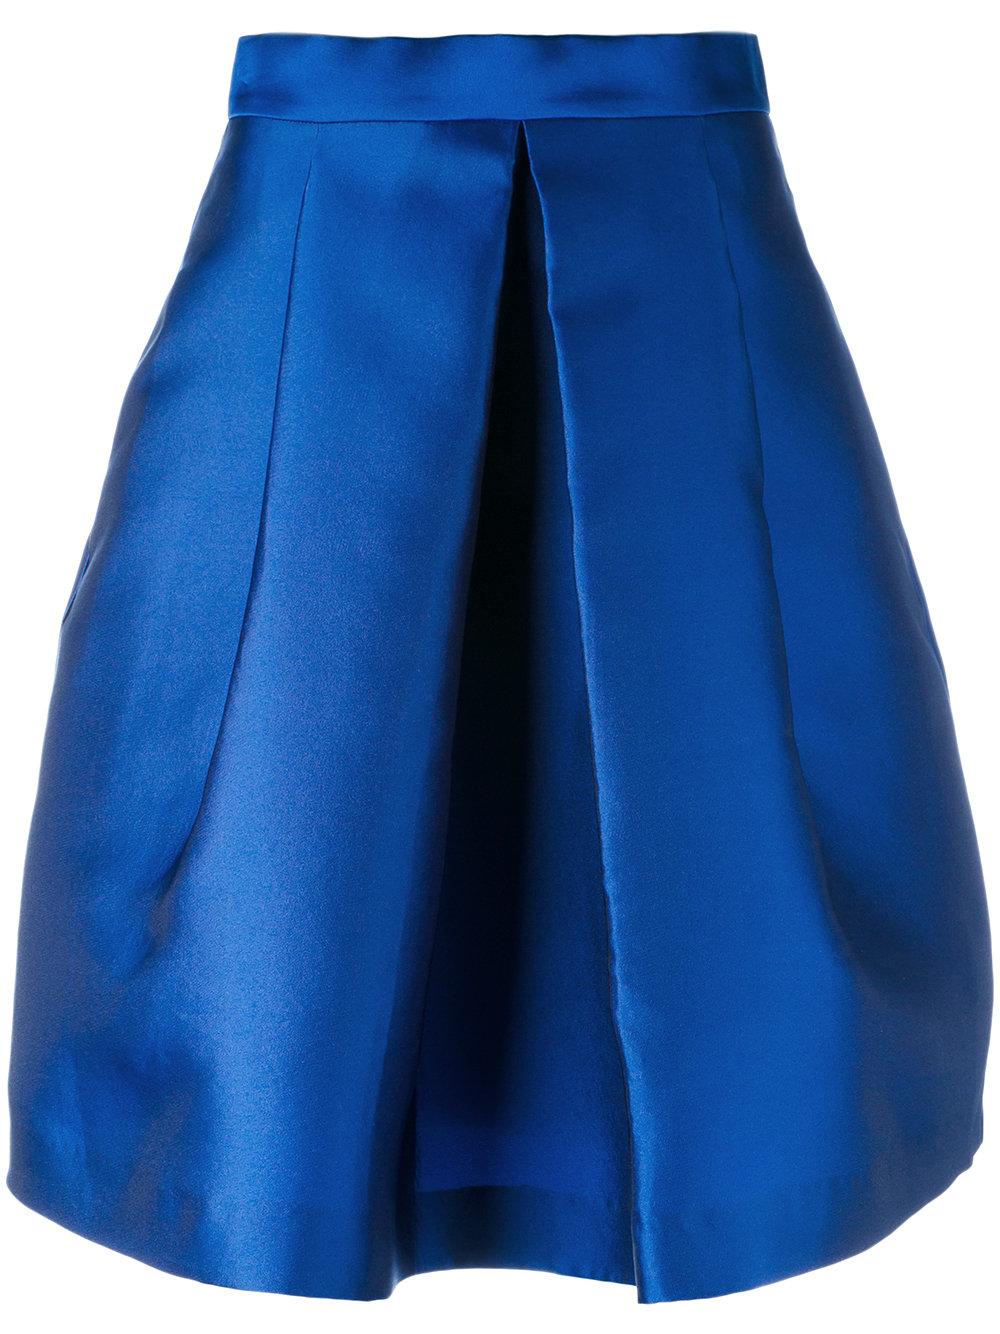 Blue Tulip Skirt 103